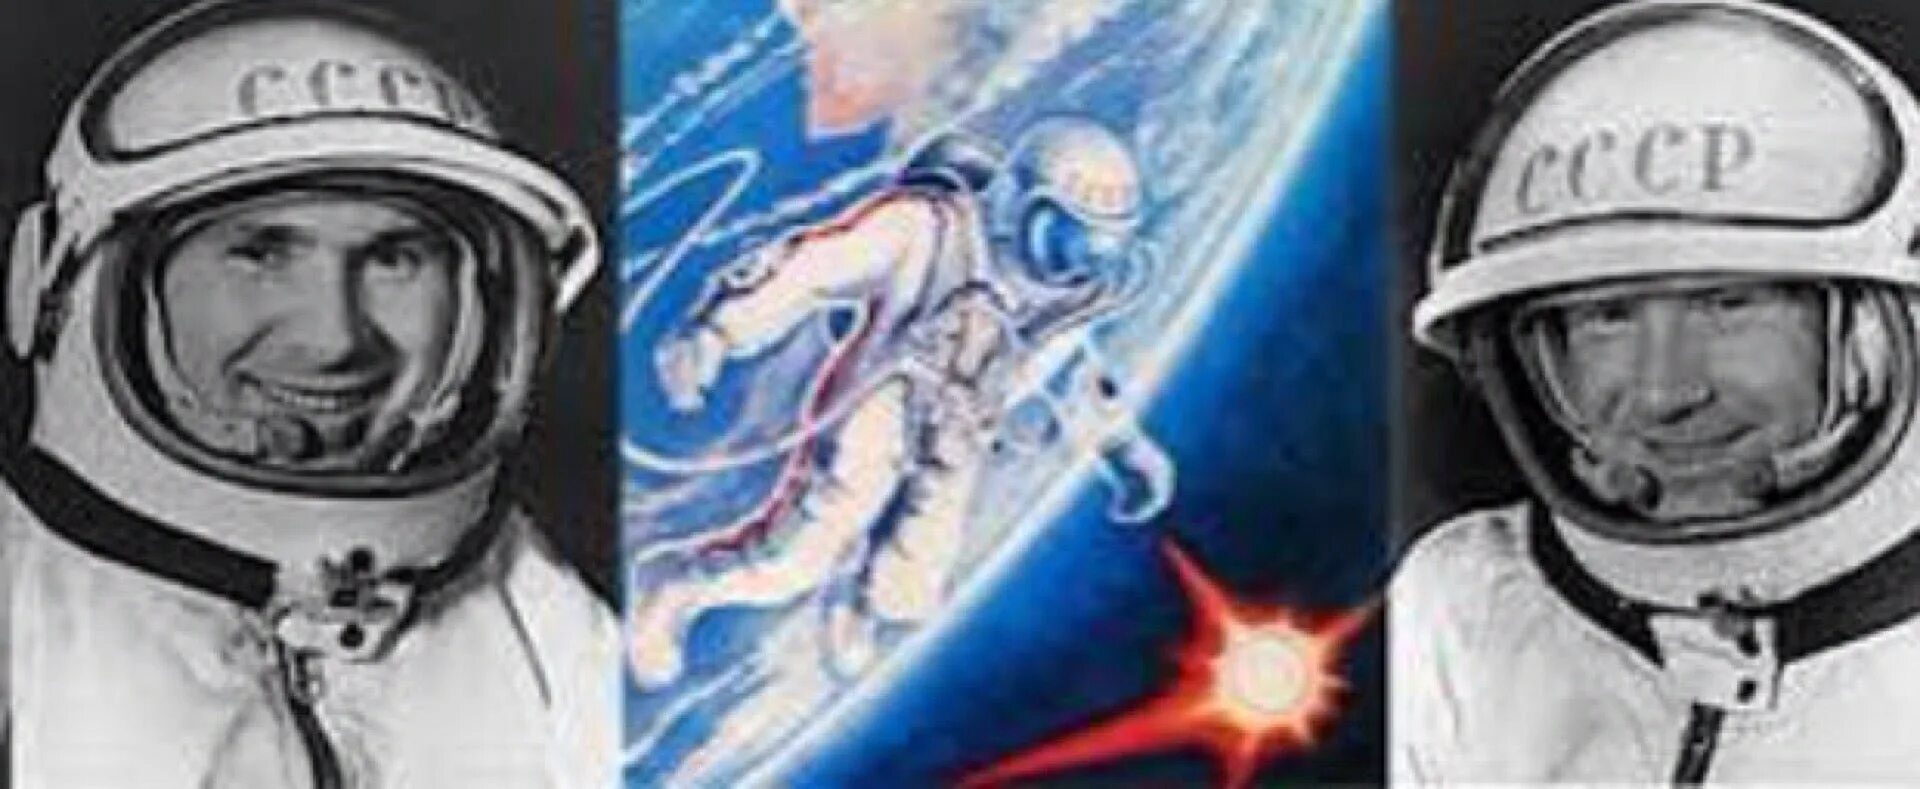 Кто снимал леонова в космосе. Восход-2 космический корабль Леонов. Восход 2 космонавты Леонов и Беляев.